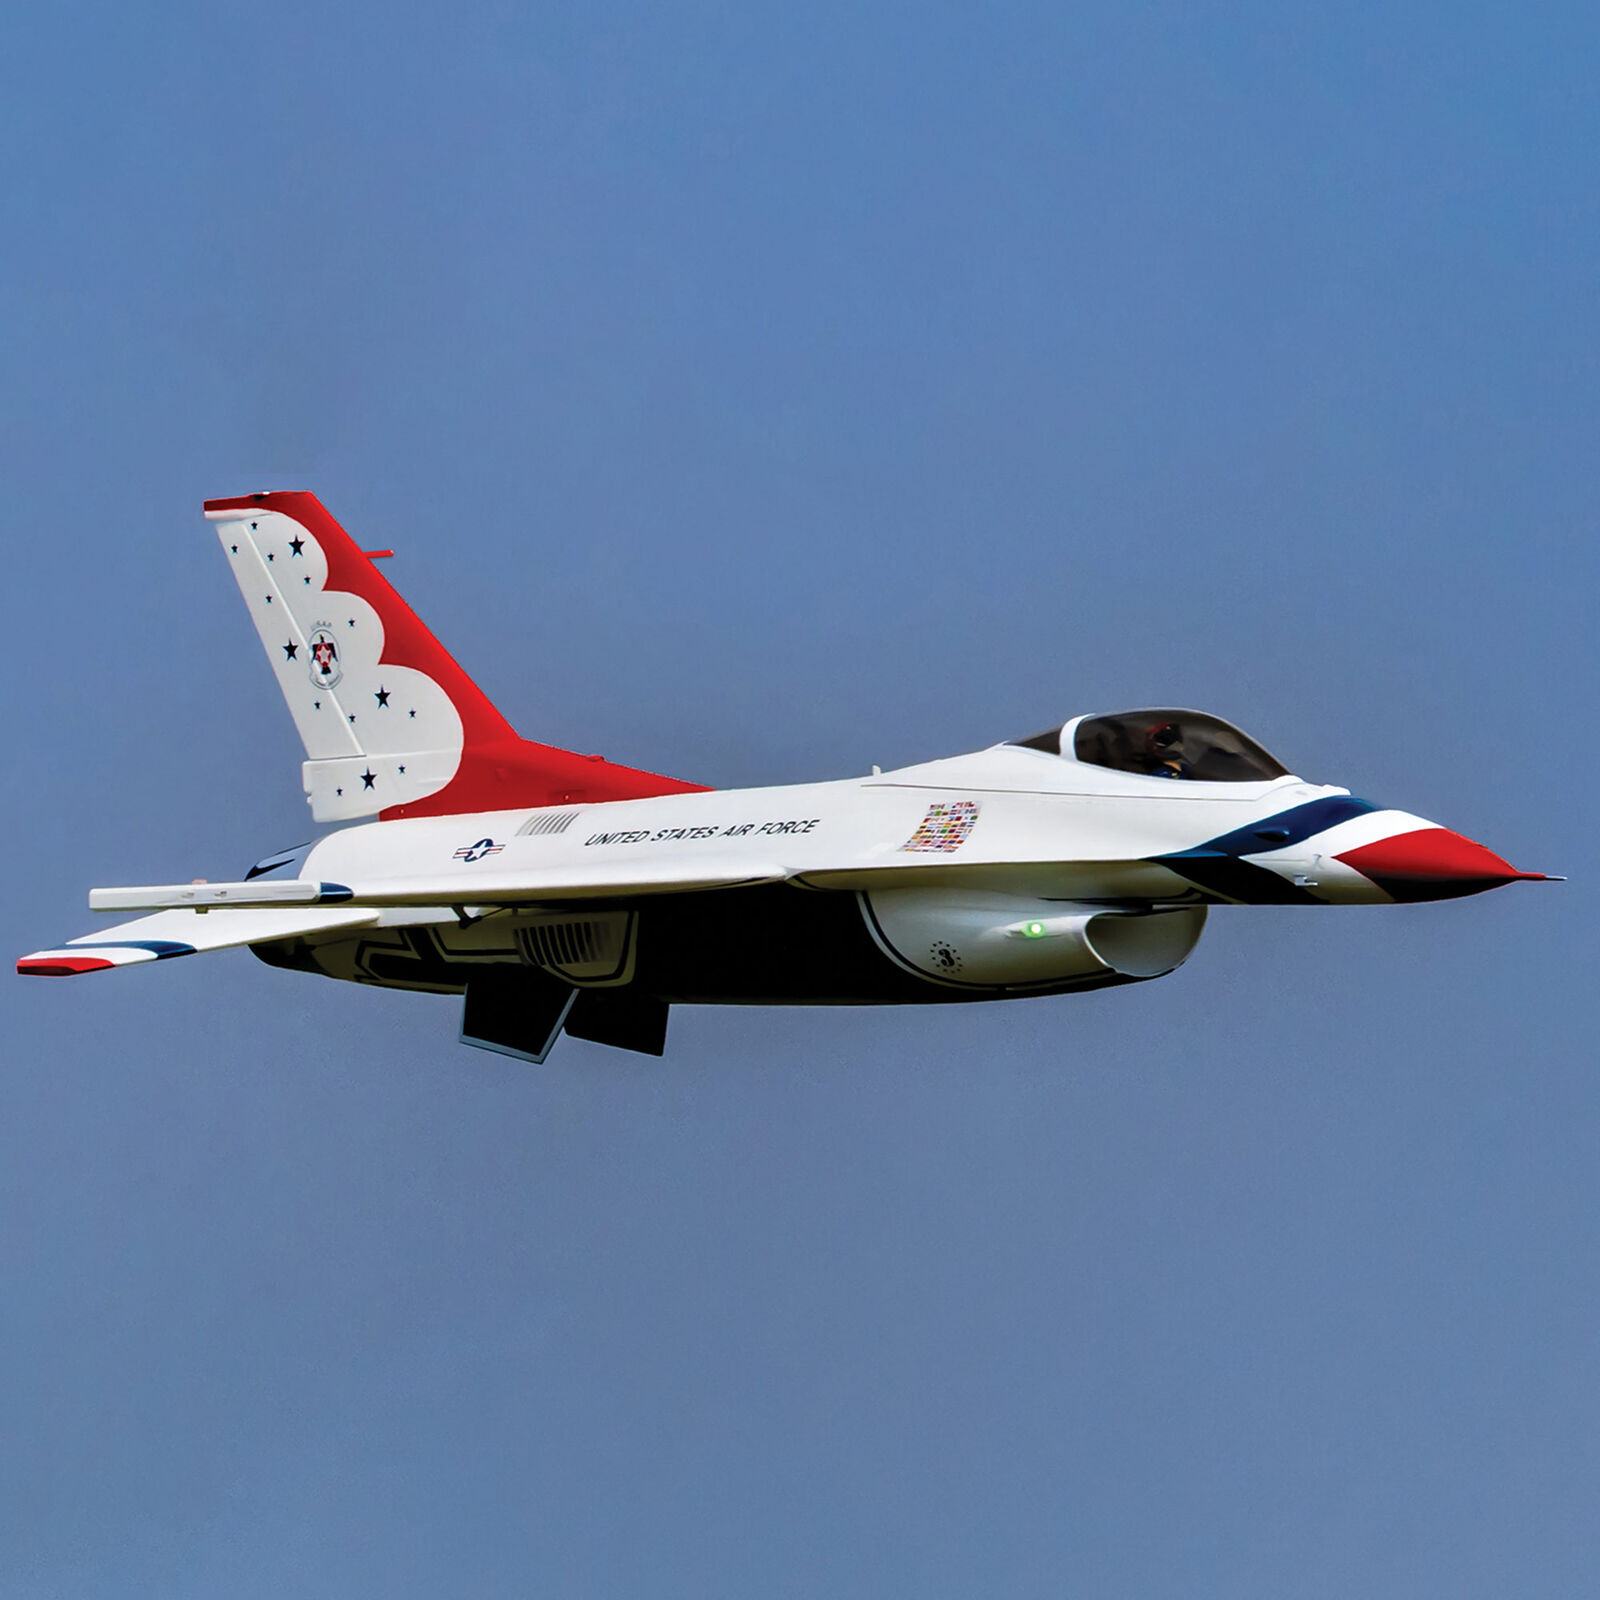 F-16 Thunderbirds 80mm E-flite